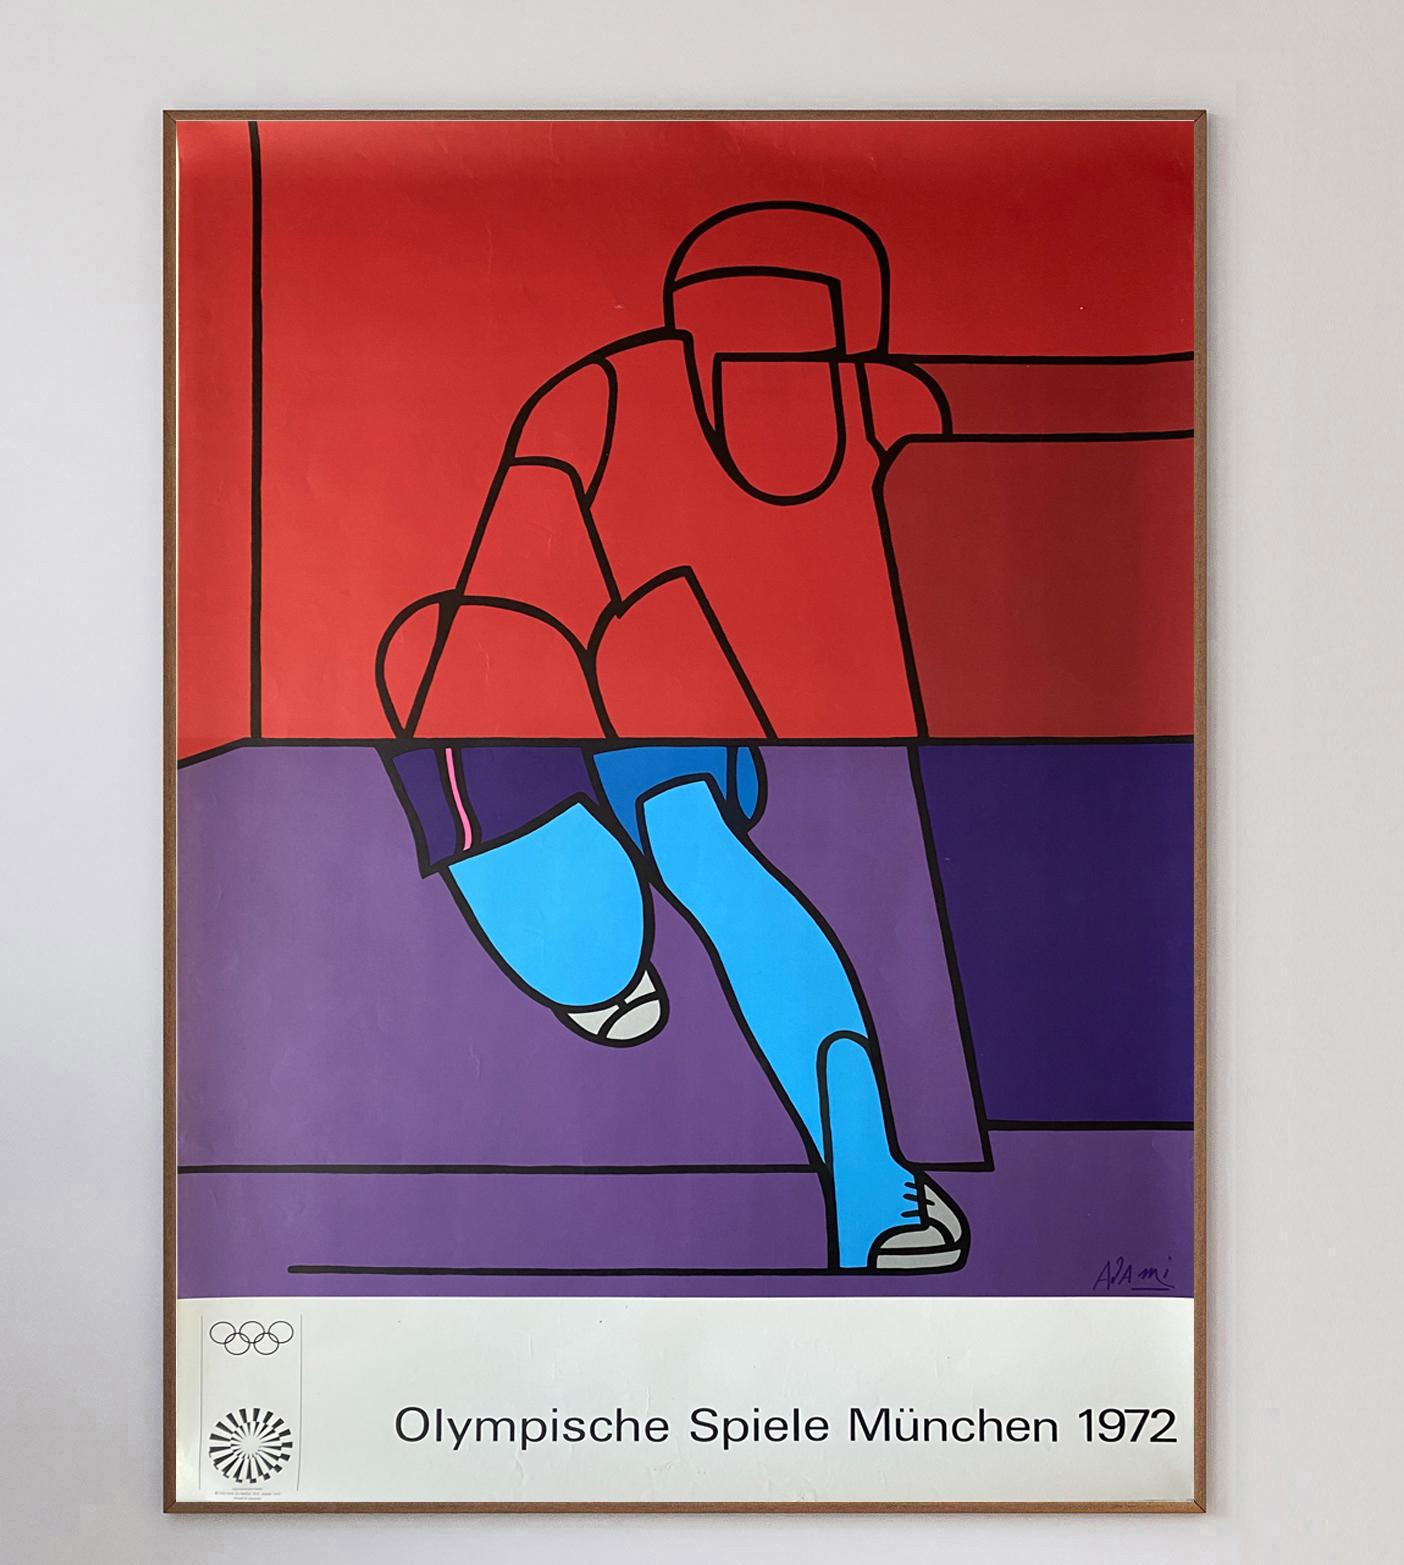 Le peintre italien Valerio Adami était l'un des 29 artistes chargés de réaliser des affiches pour les Jeux olympiques de Munich en 1972. À l'approche des Jeux de 1972, le comité d'organisation a décidé de commander une série d'affiches d'artistes